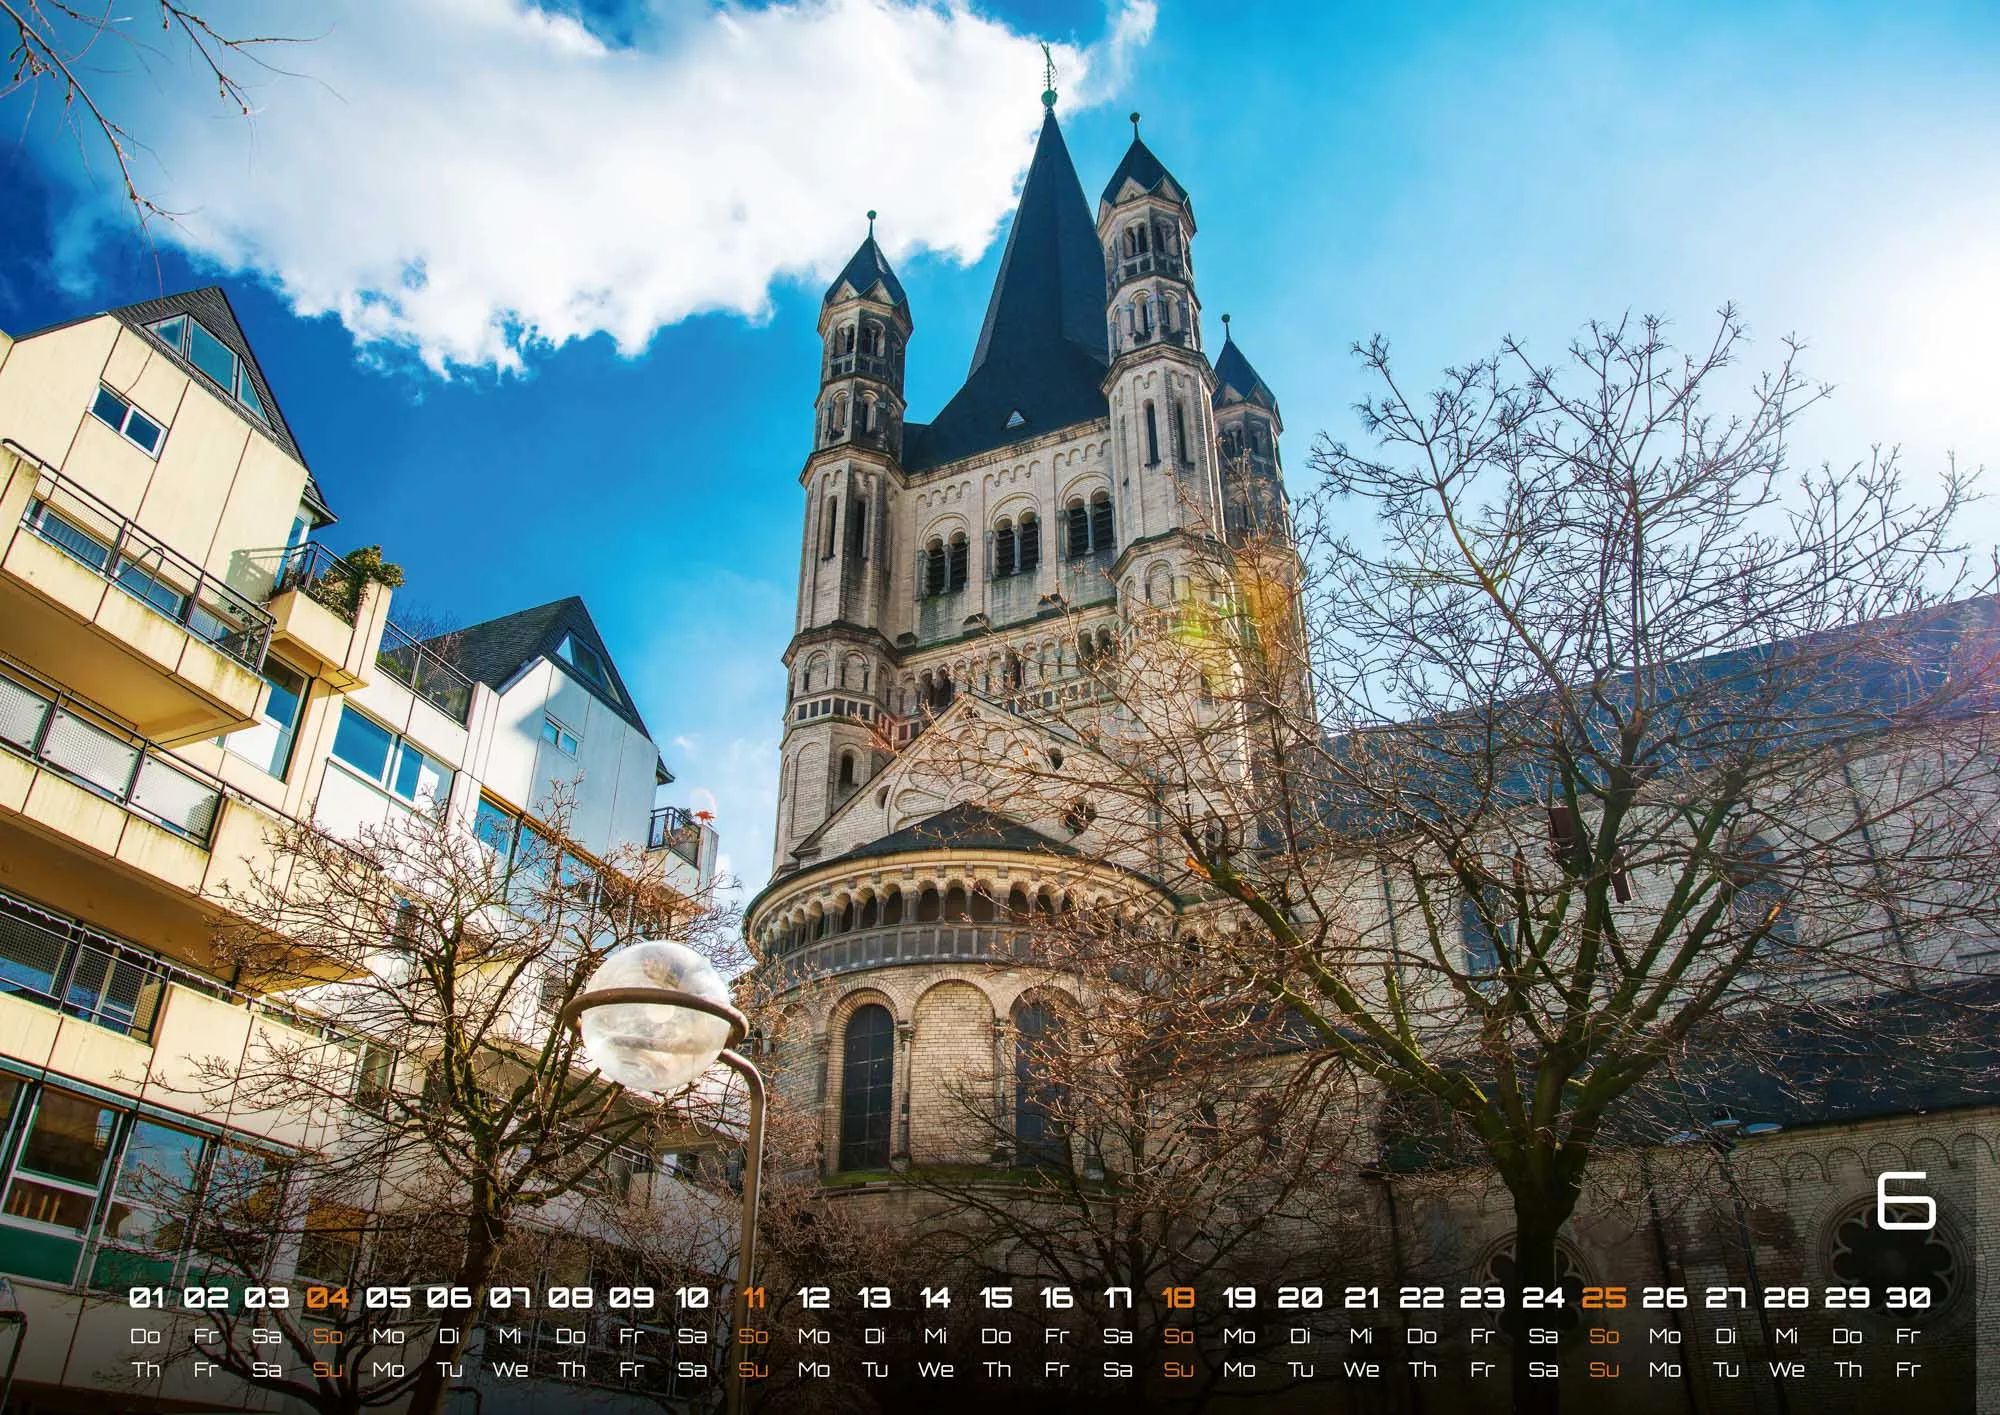 Deutschland - eine Reise zu bezaubernden Landschaften und Sehenswürdigkeiten - 2023 - Kalender